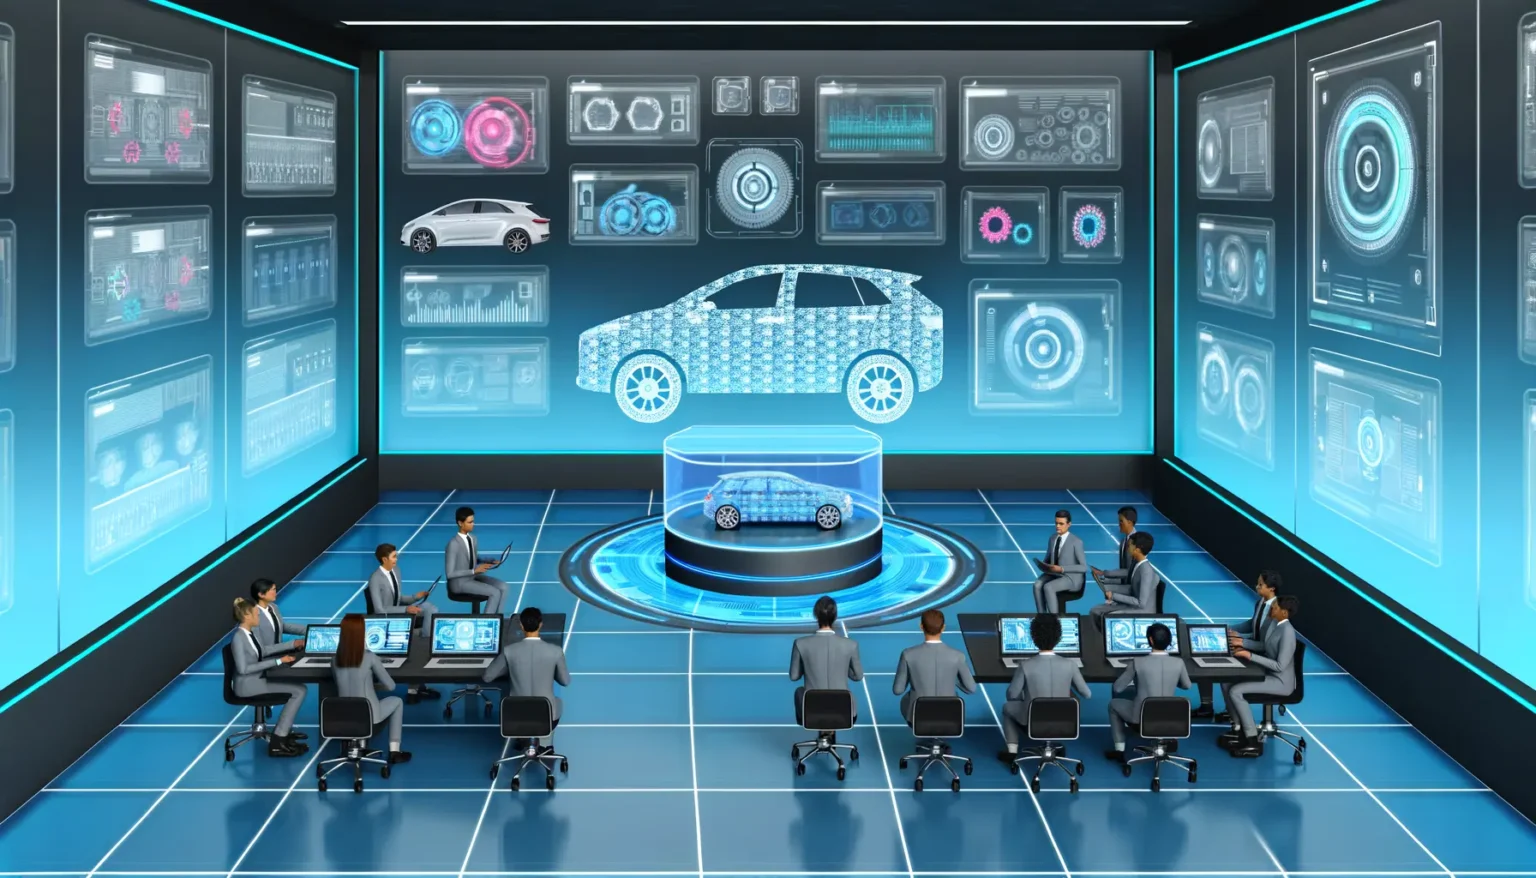 Futuristische Darstellung eines High-Tech-Kontrollraums für Fahrzeugdesign und -überwachung mit Personen an Arbeitsstationen, umgeben von mehreren Bildschirmen mit grafischen Benutzeroberflächen und einem holographischen Auto in der Mitte.